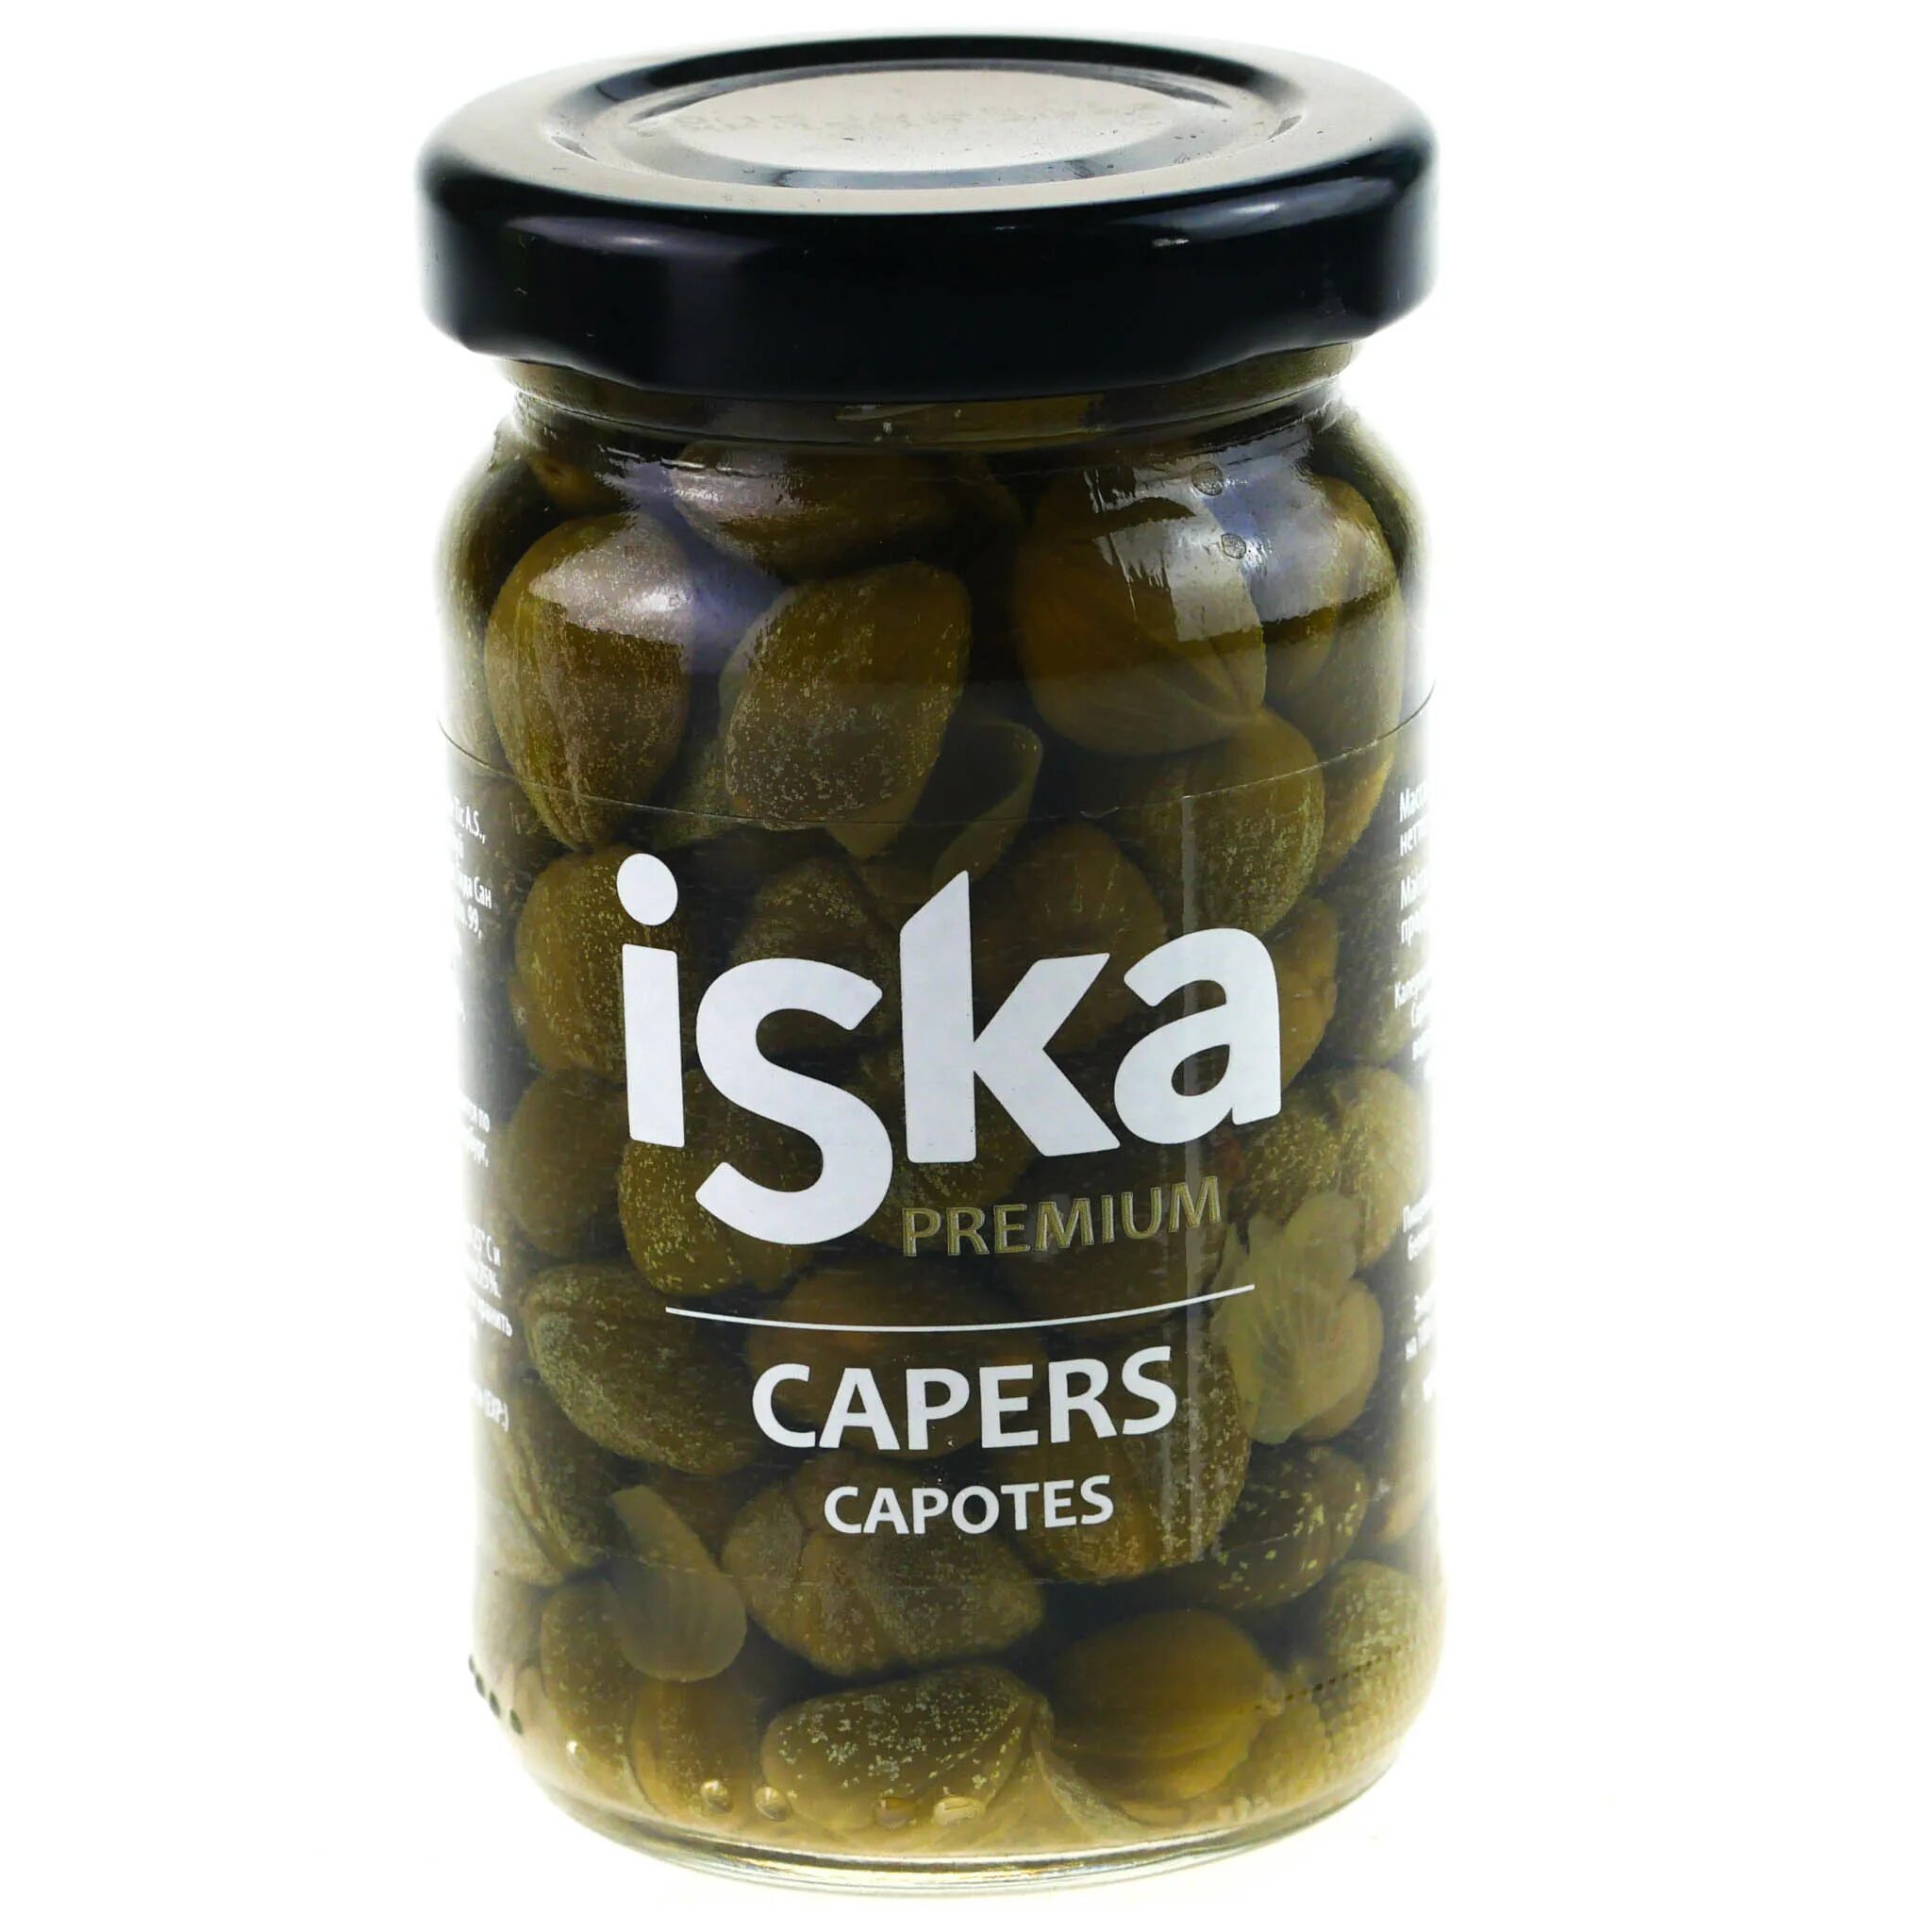 Каперсы консервированные. Каперсы iska 100г. Каперсы Premium iska 100 г. Каперсы консервированные «iska», 106мл. Каперсы консервы.